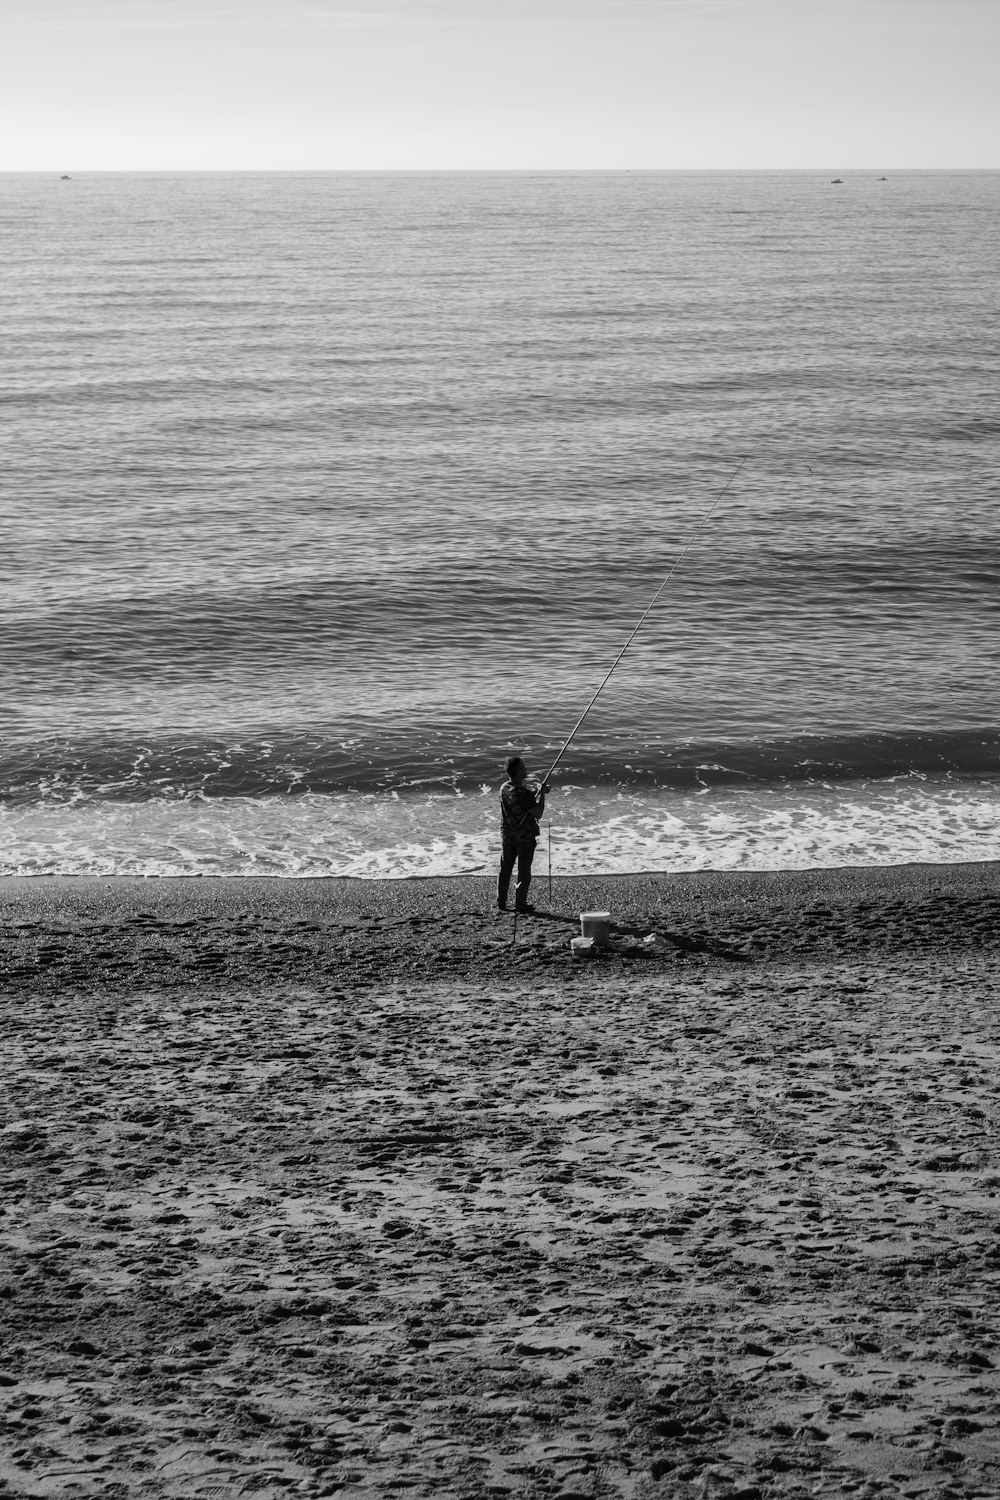 바다 옆 모래사장 위에 서 있는 남자